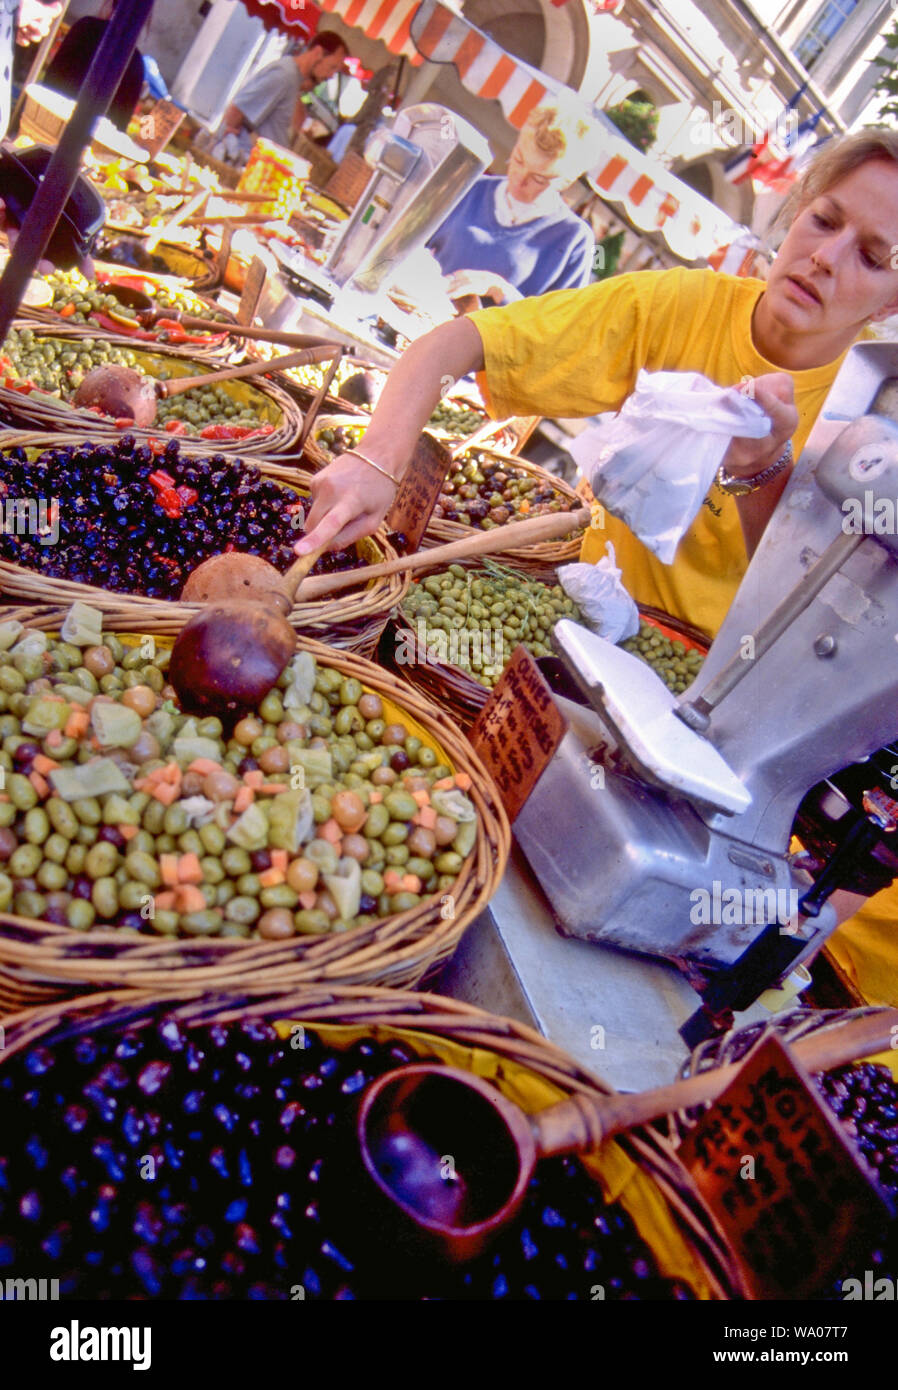 Oliven sind kleine Früchte, die geheilt sind und für Lebensmittel, das gesund und aromatisch fermentiert. Olivenöl aus Oliven gewonnen. Stockfoto